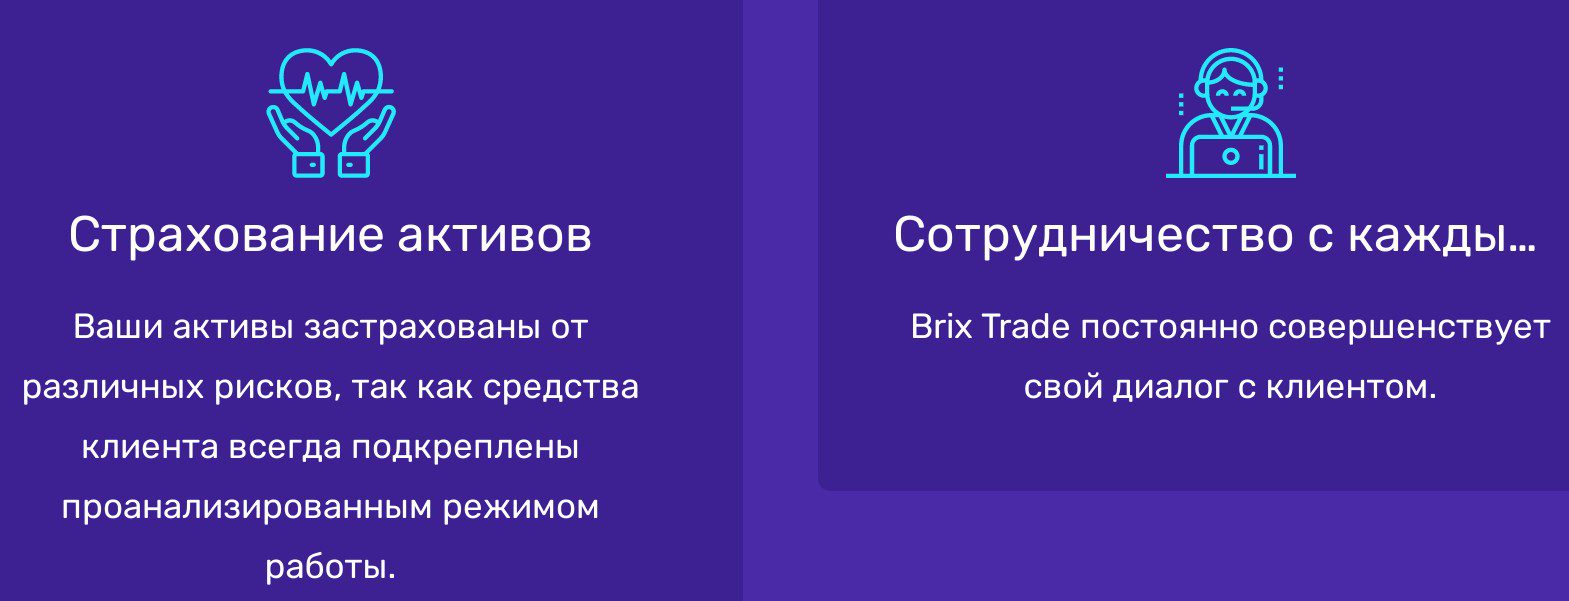 Brix Traders условия сотрудничества